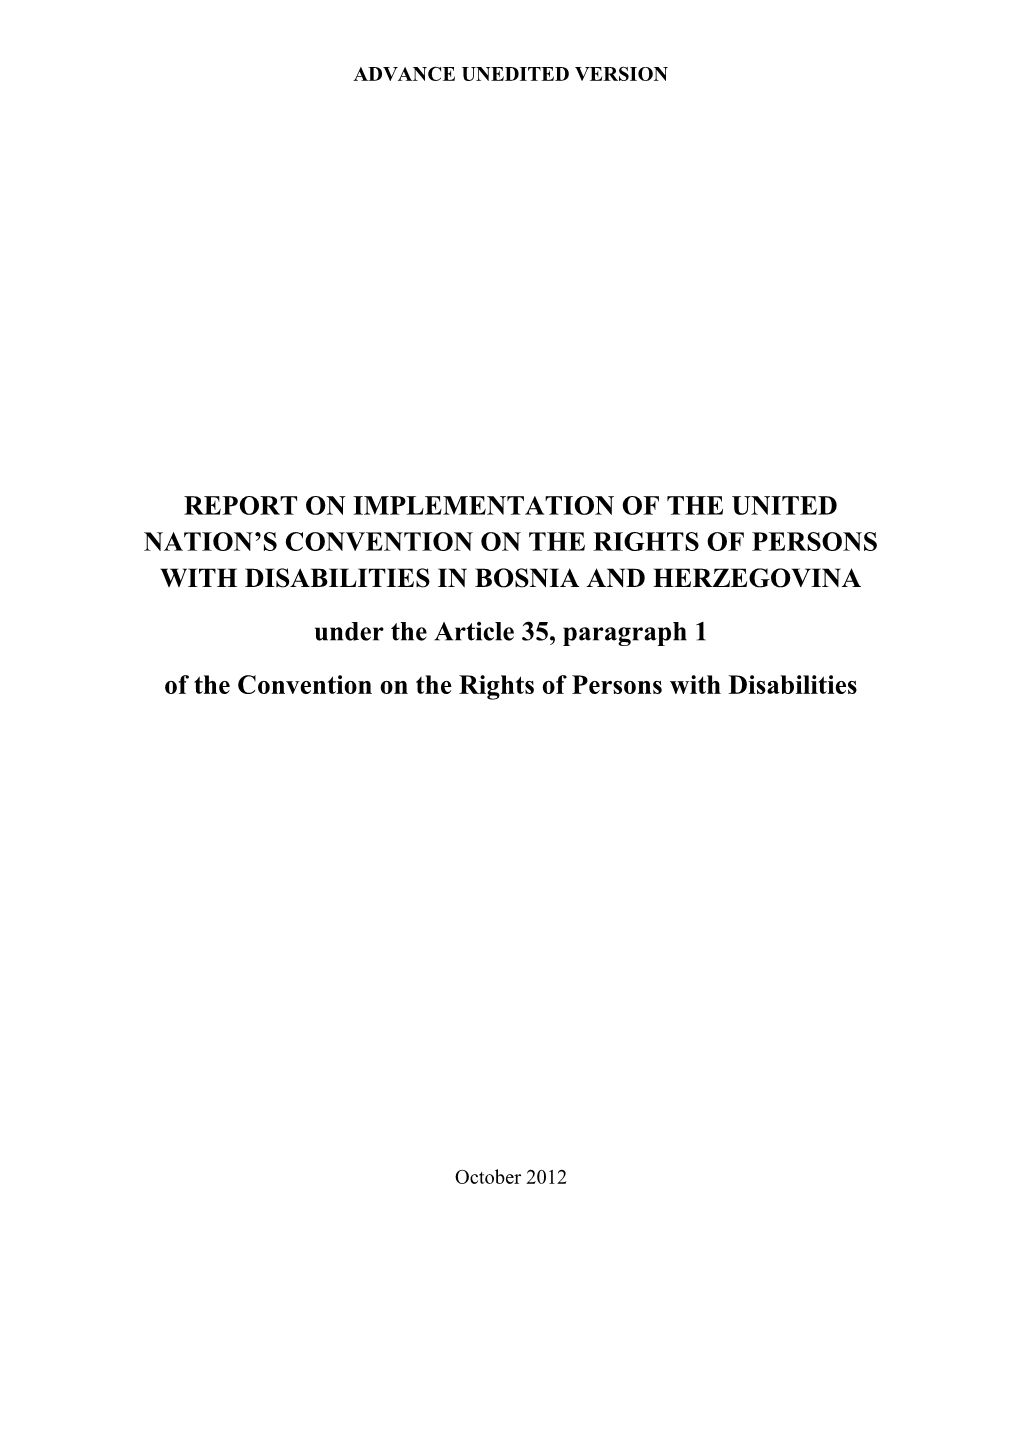 Inicijalni Izvještaj Bosne I Hercegovine O Provođenju Konvencije O Pravima Osoba Sa